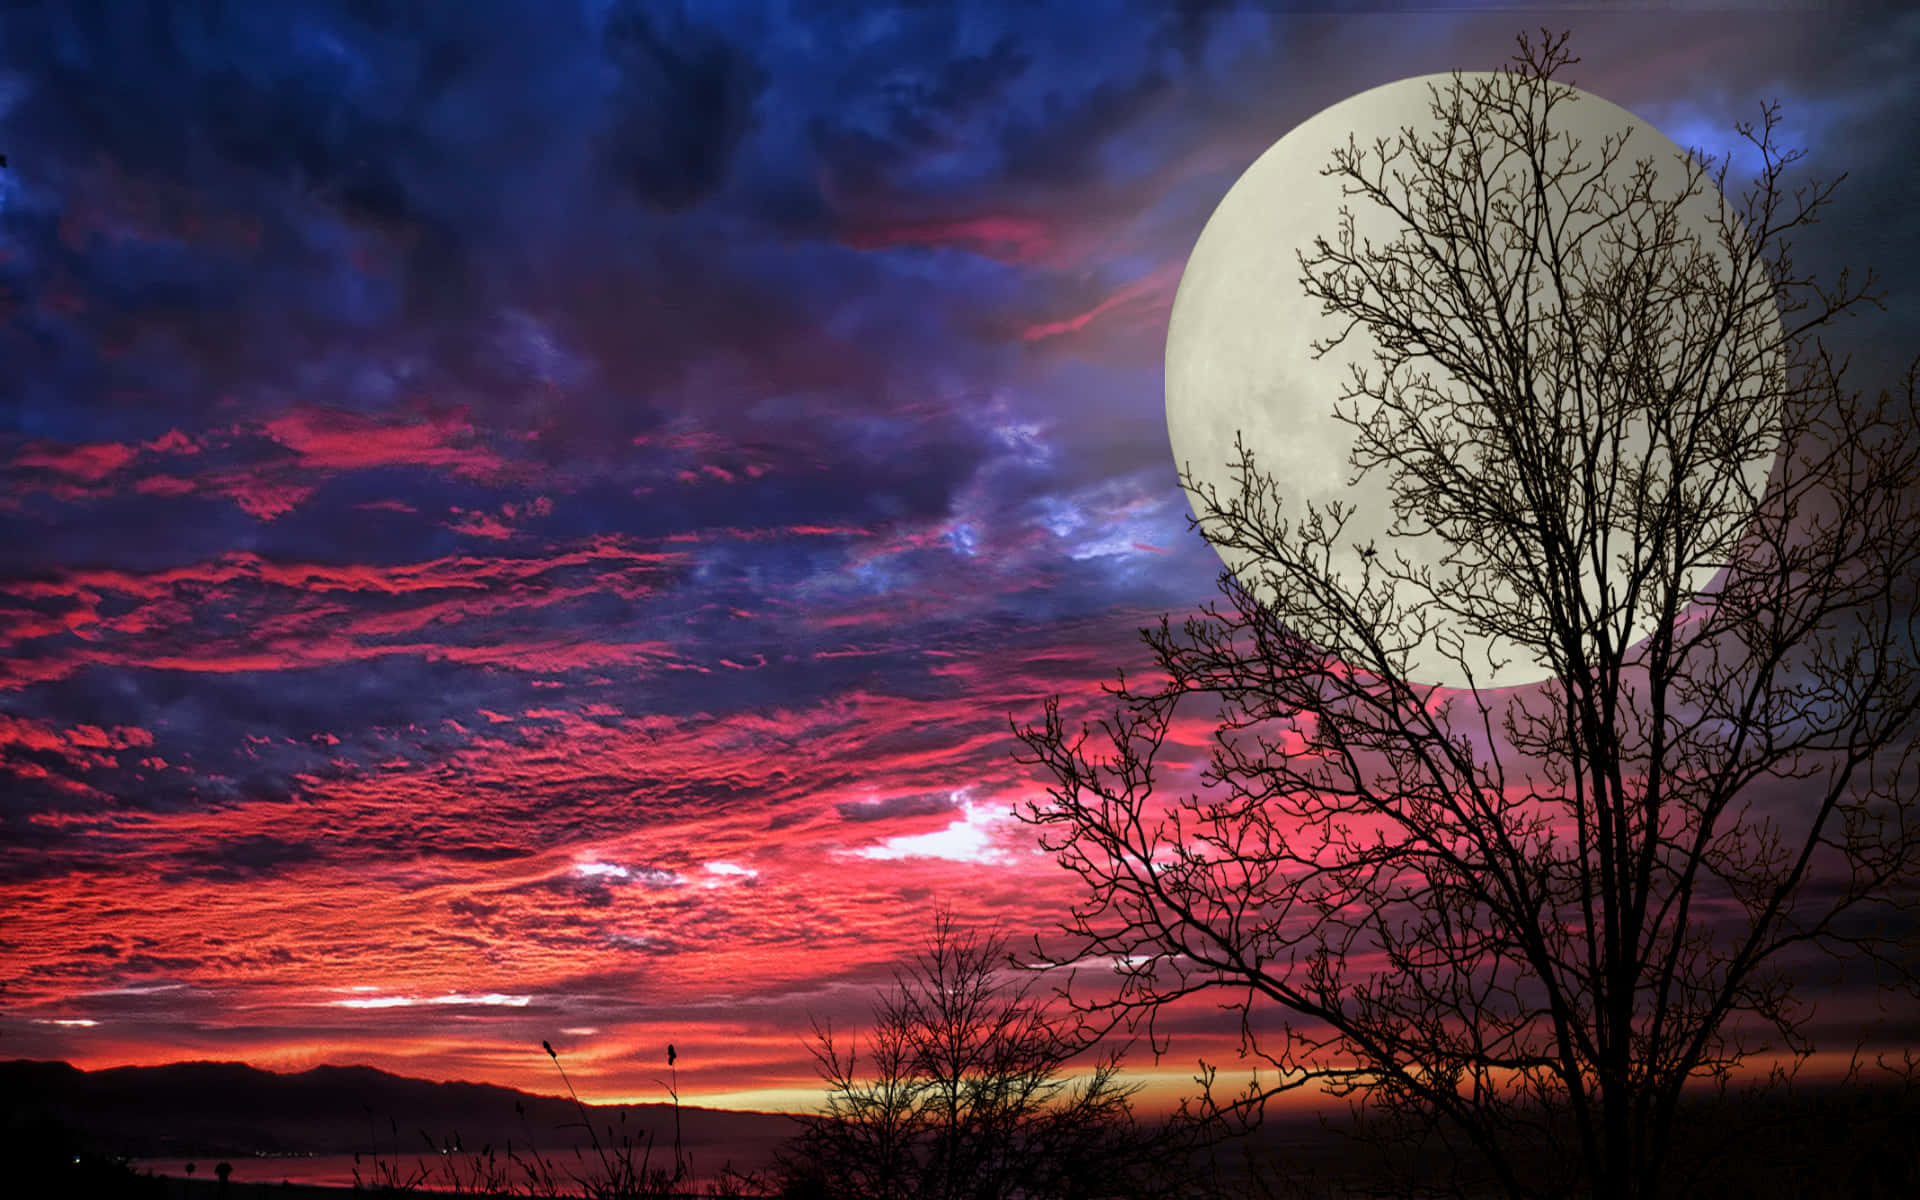 Unaserena Y Hermosa Luna Llena, Brillando Intensamente En El Cielo Nocturno.